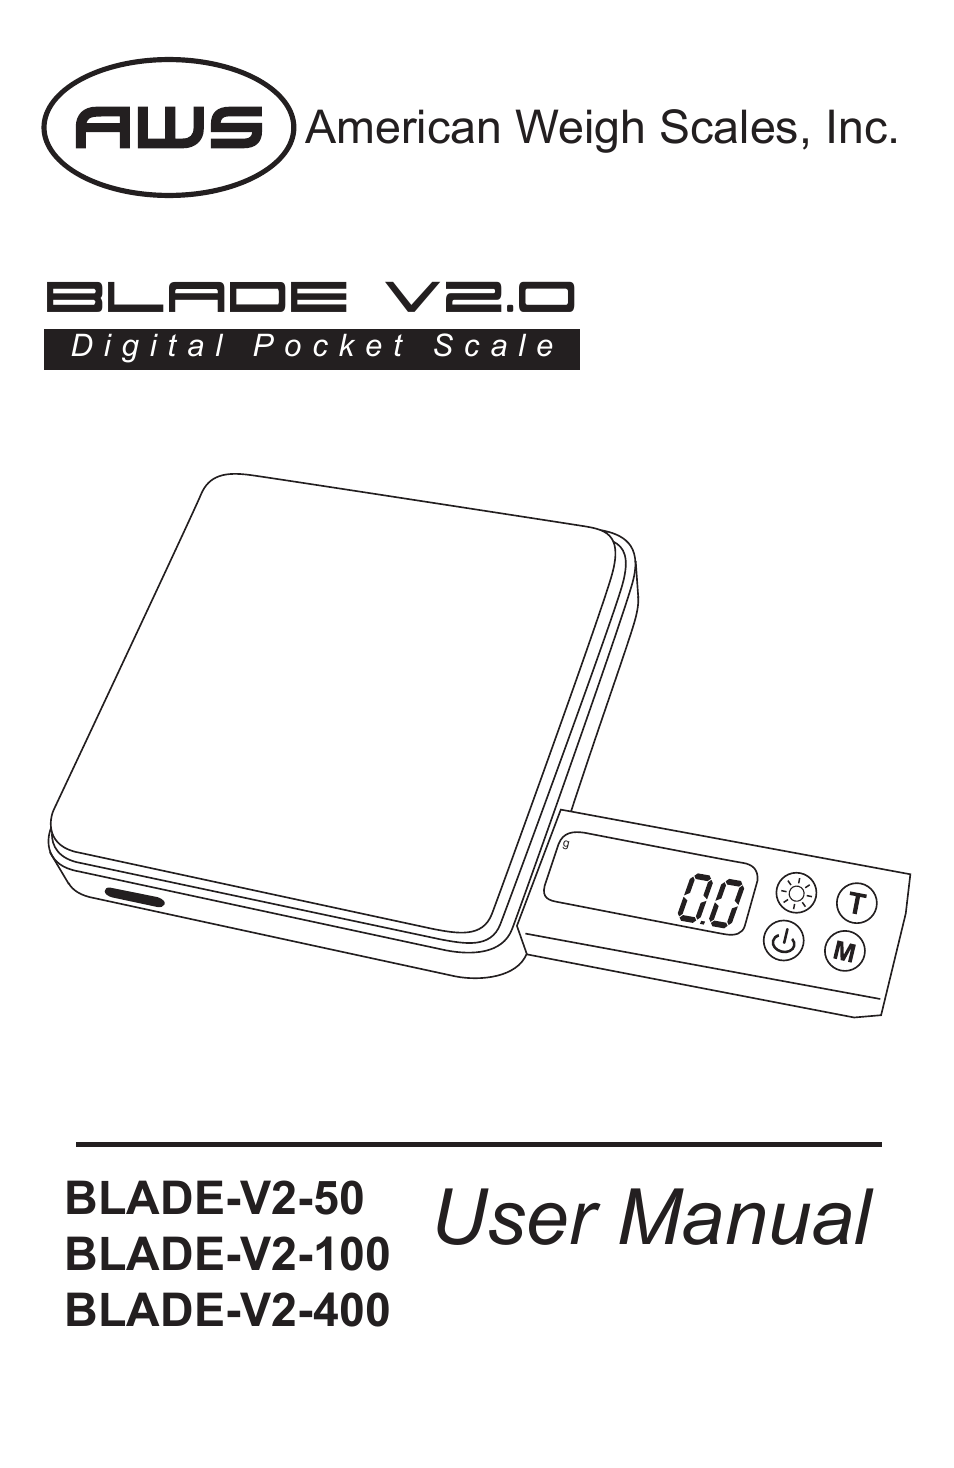 Blade-V2-100